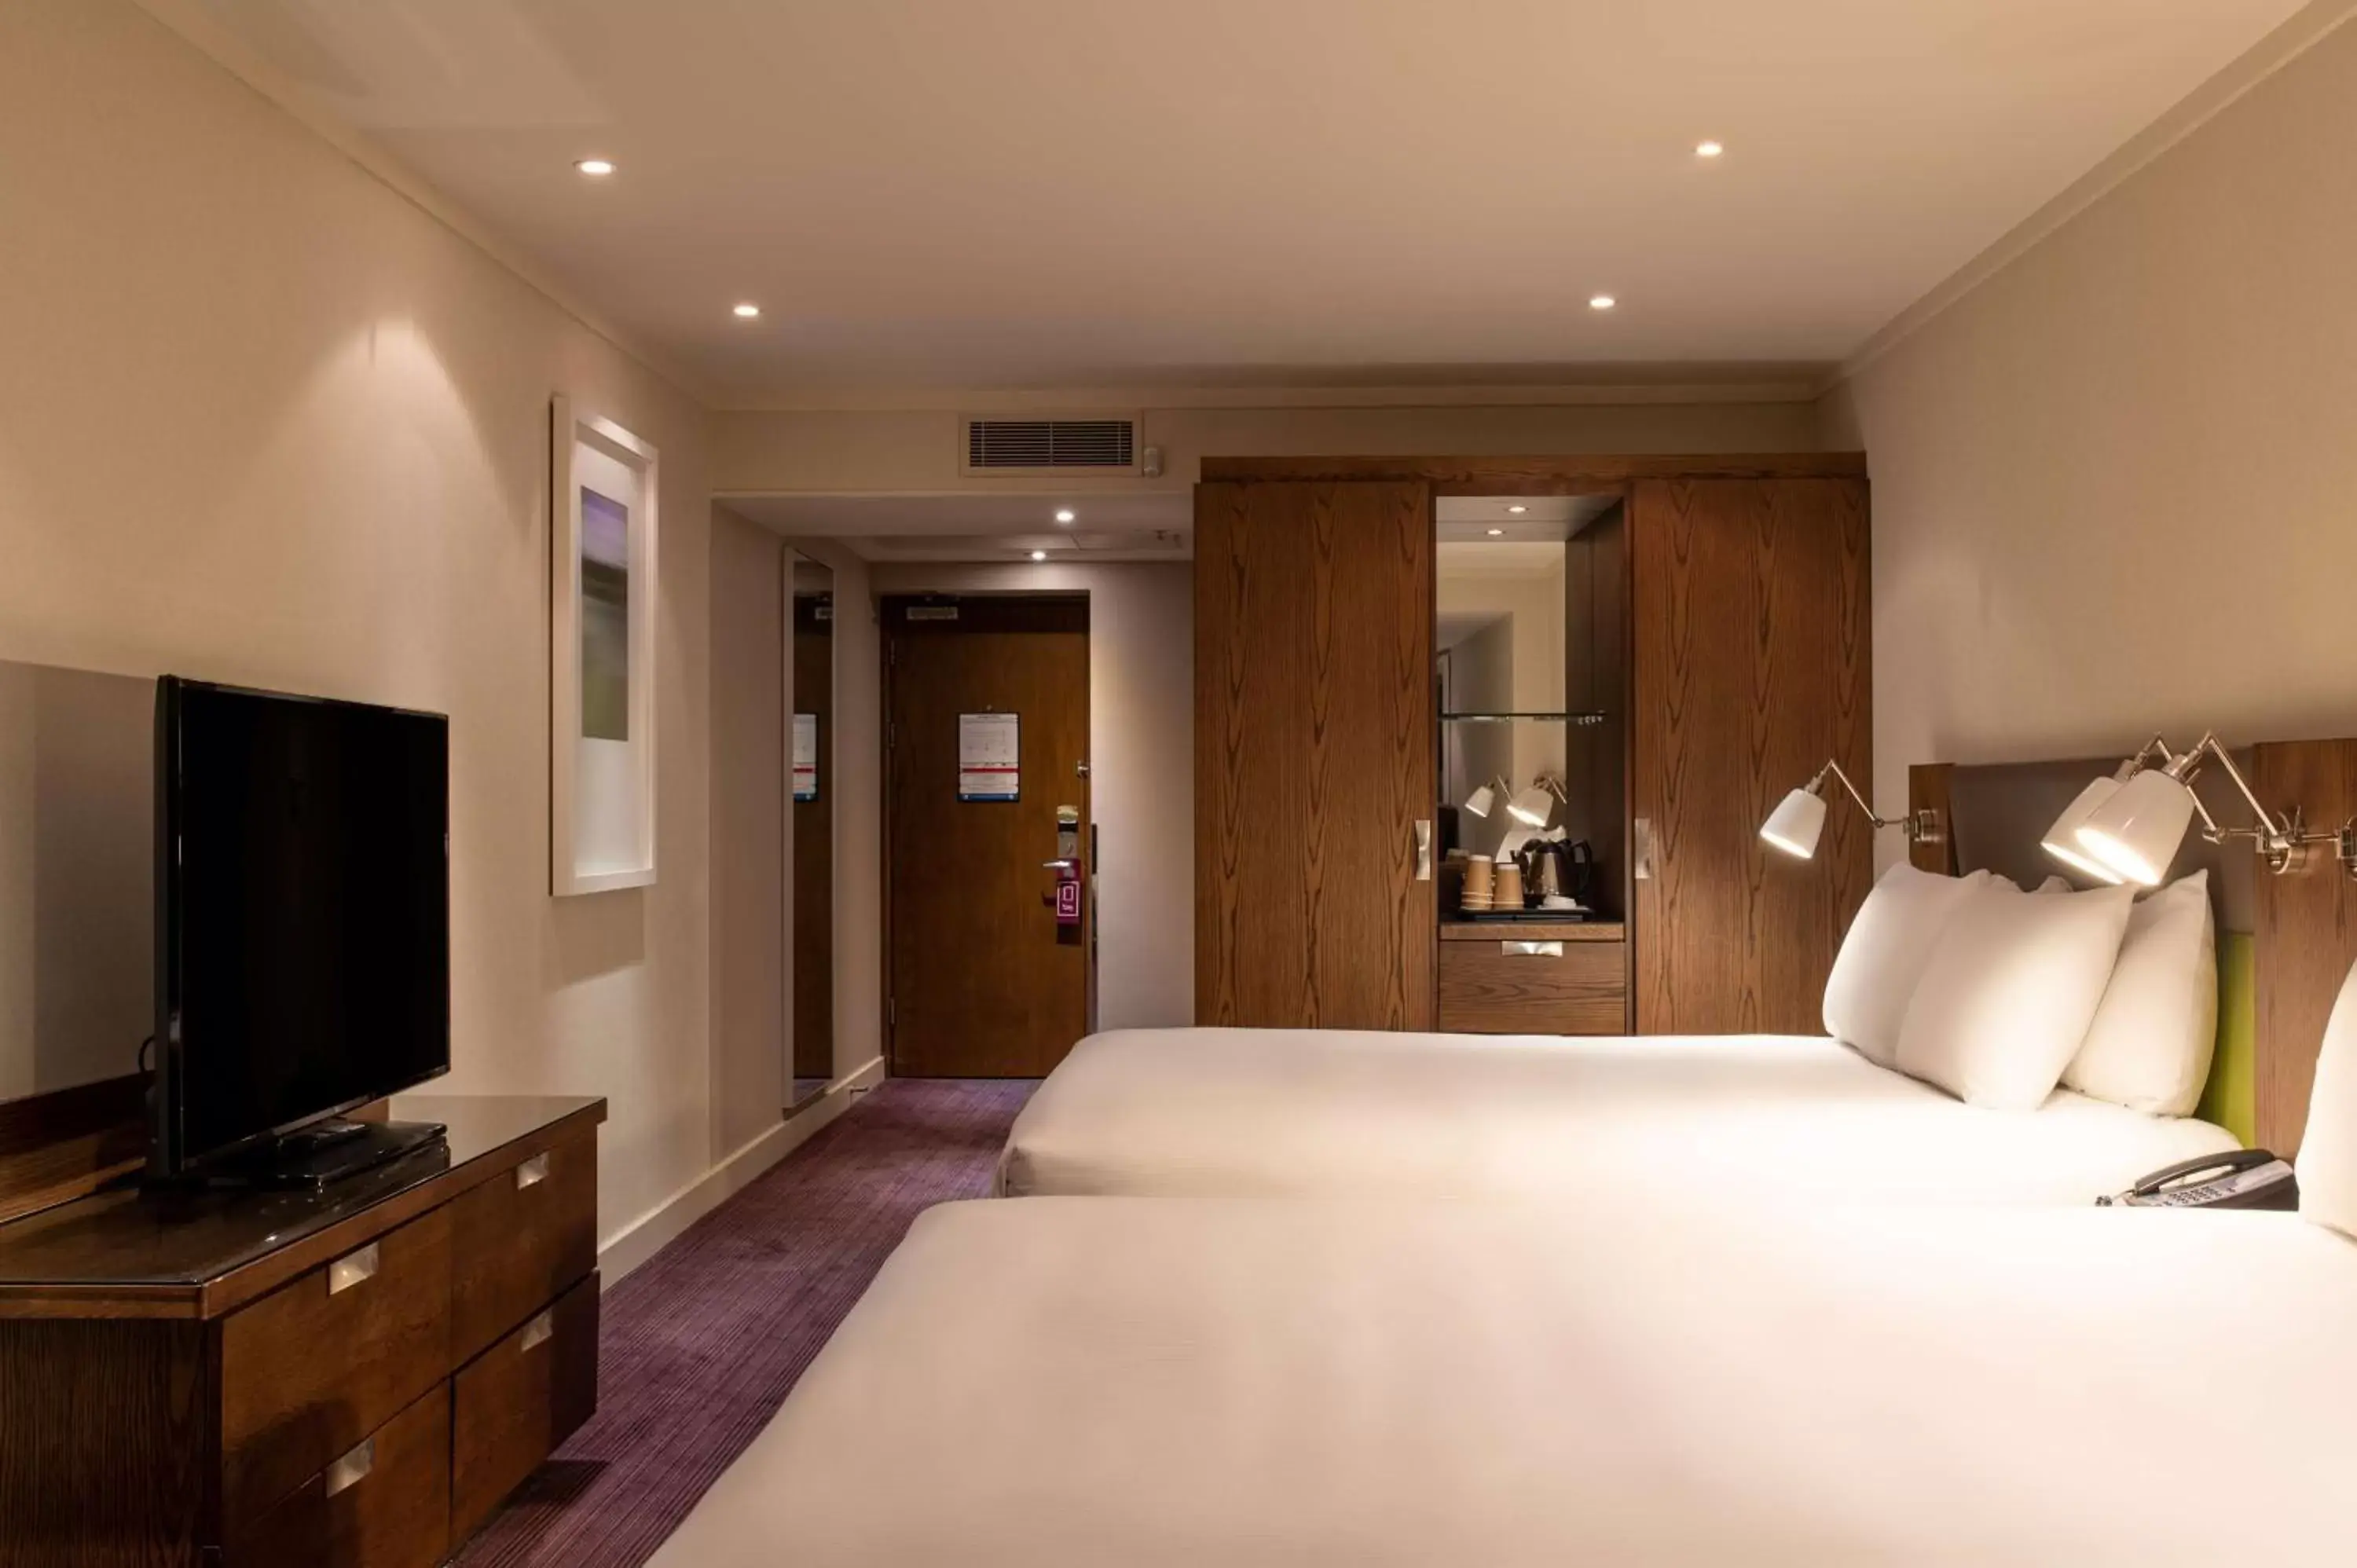 Bed in Hilton London Metropole